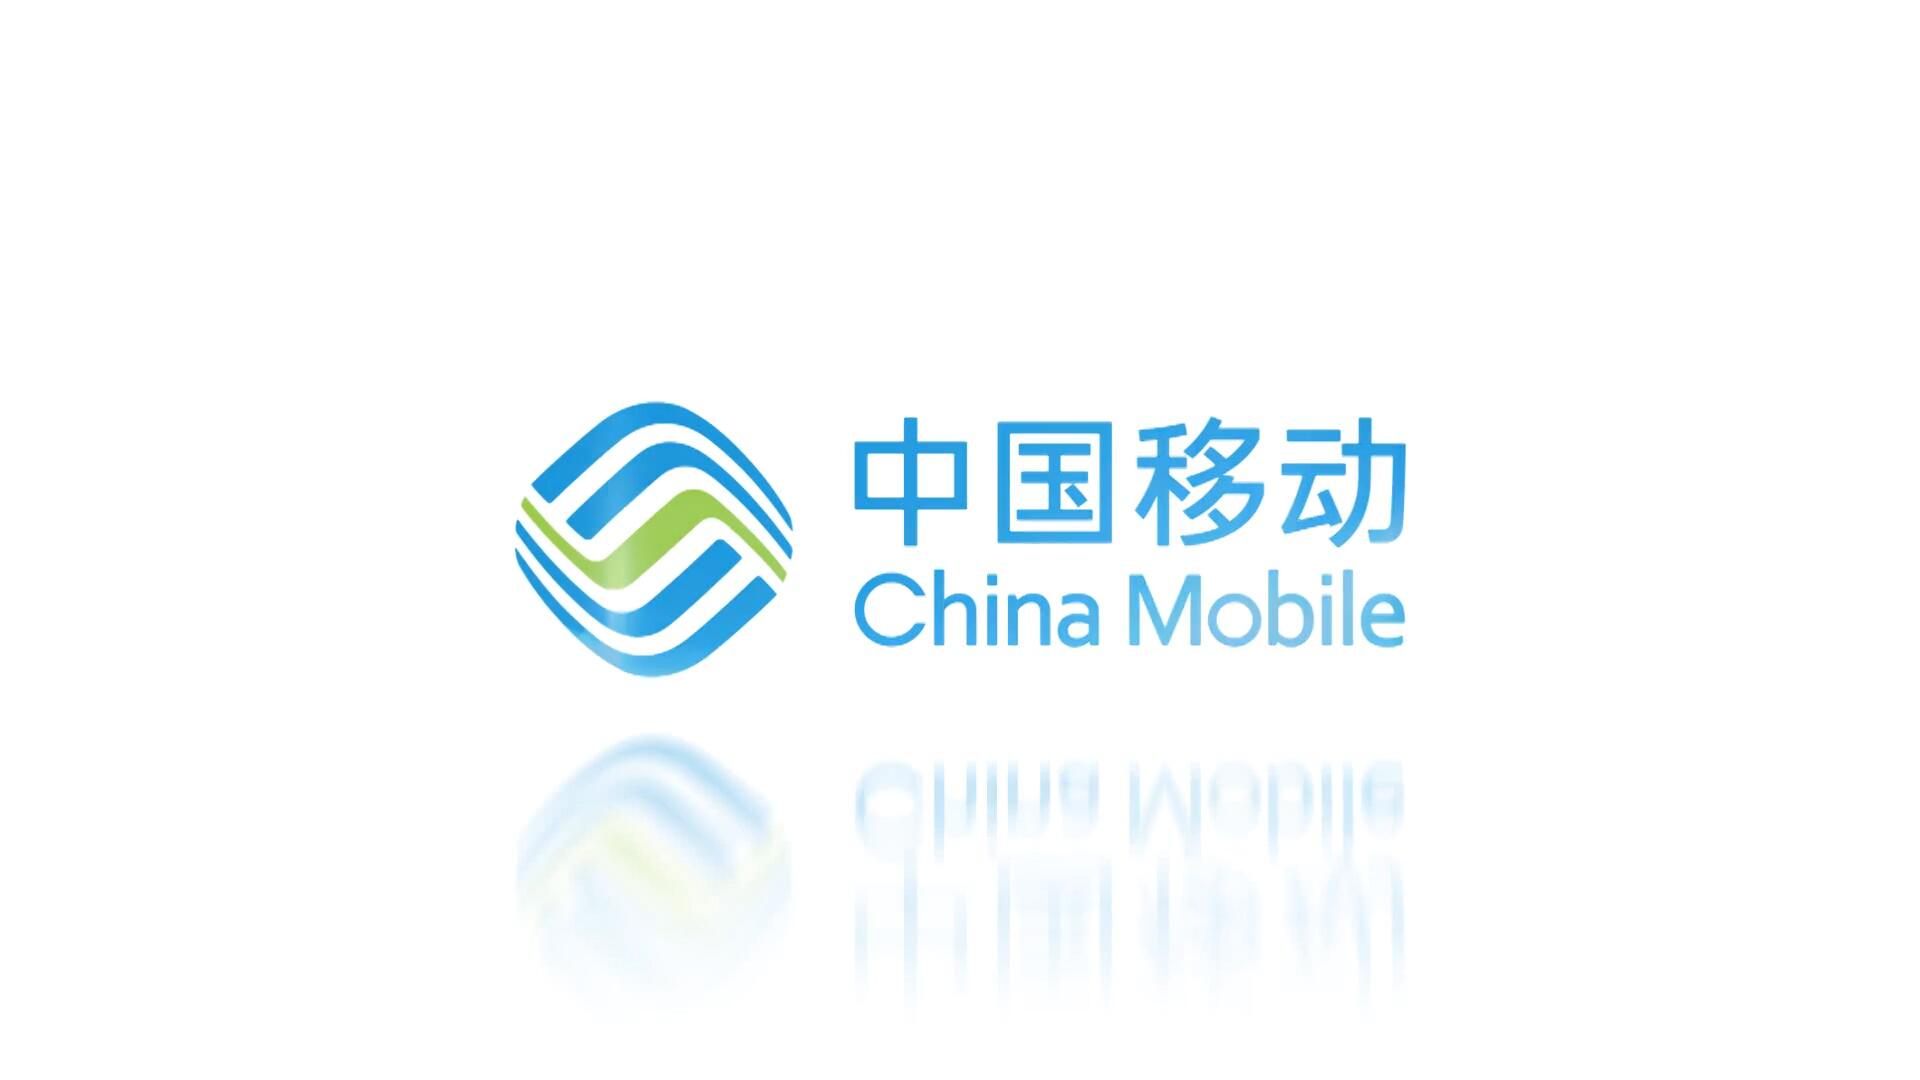 中国移动国际企业宣传片